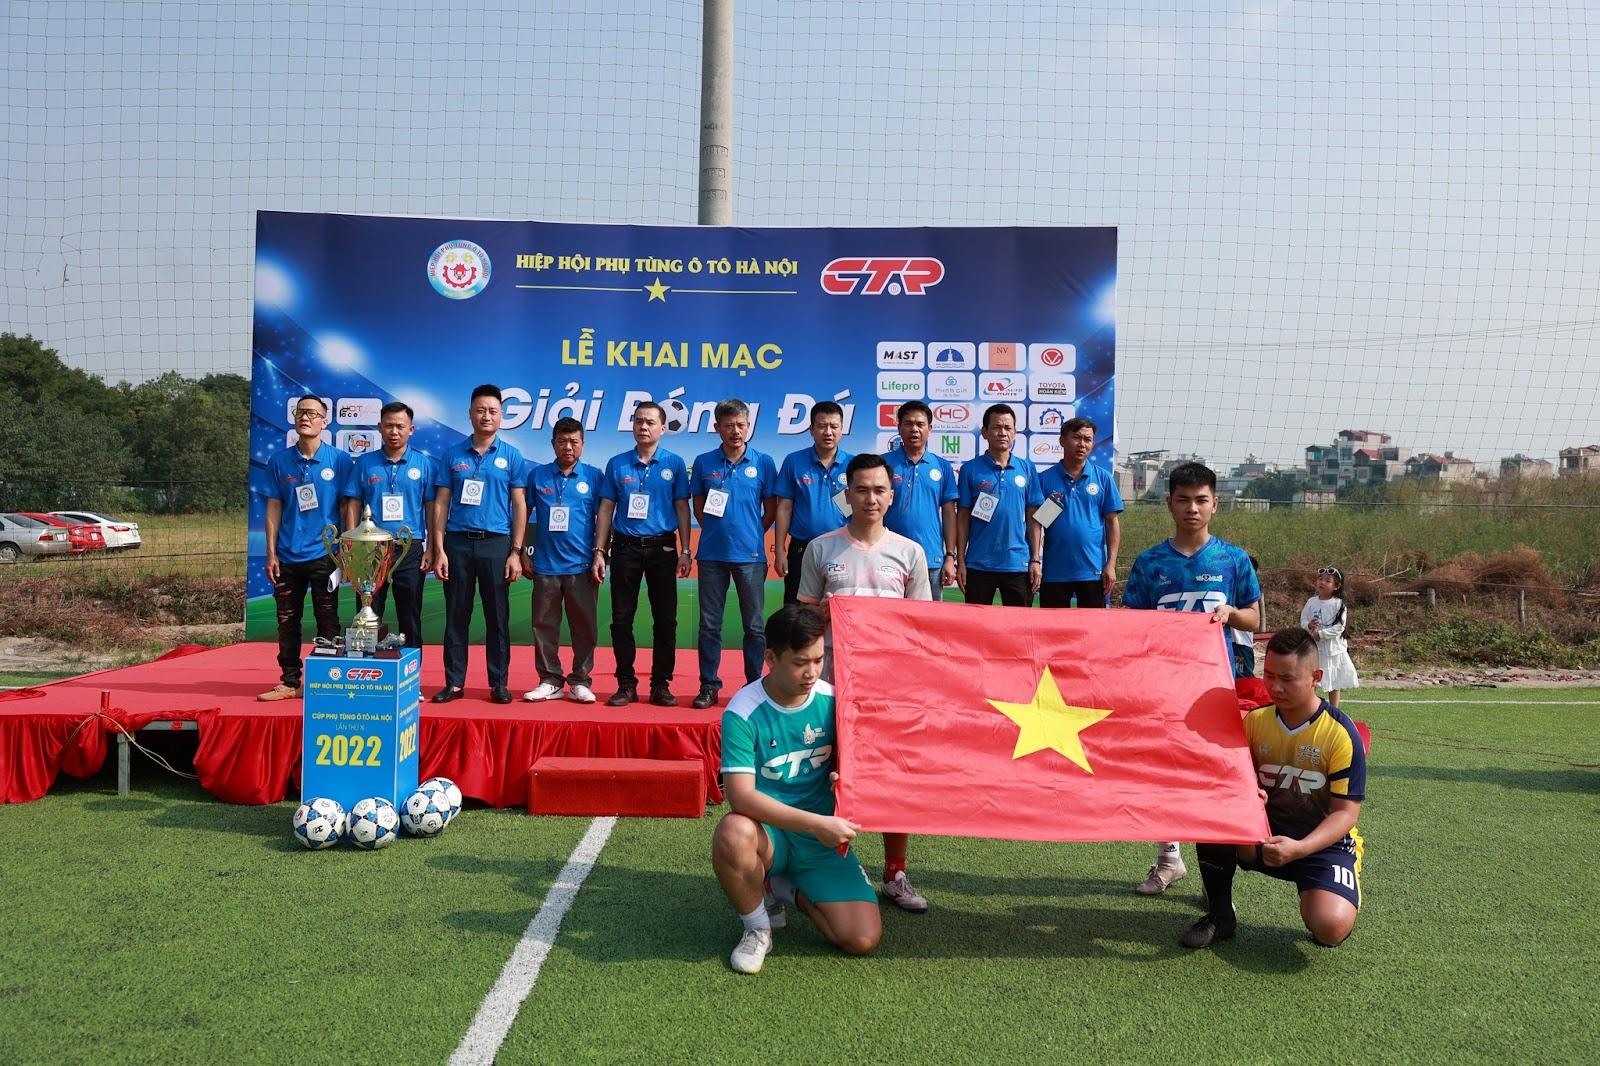 Giải bóng đá Hiệp hội phụ tùng Ô tô lần thứ XI năm 2022 cùng FC Mast